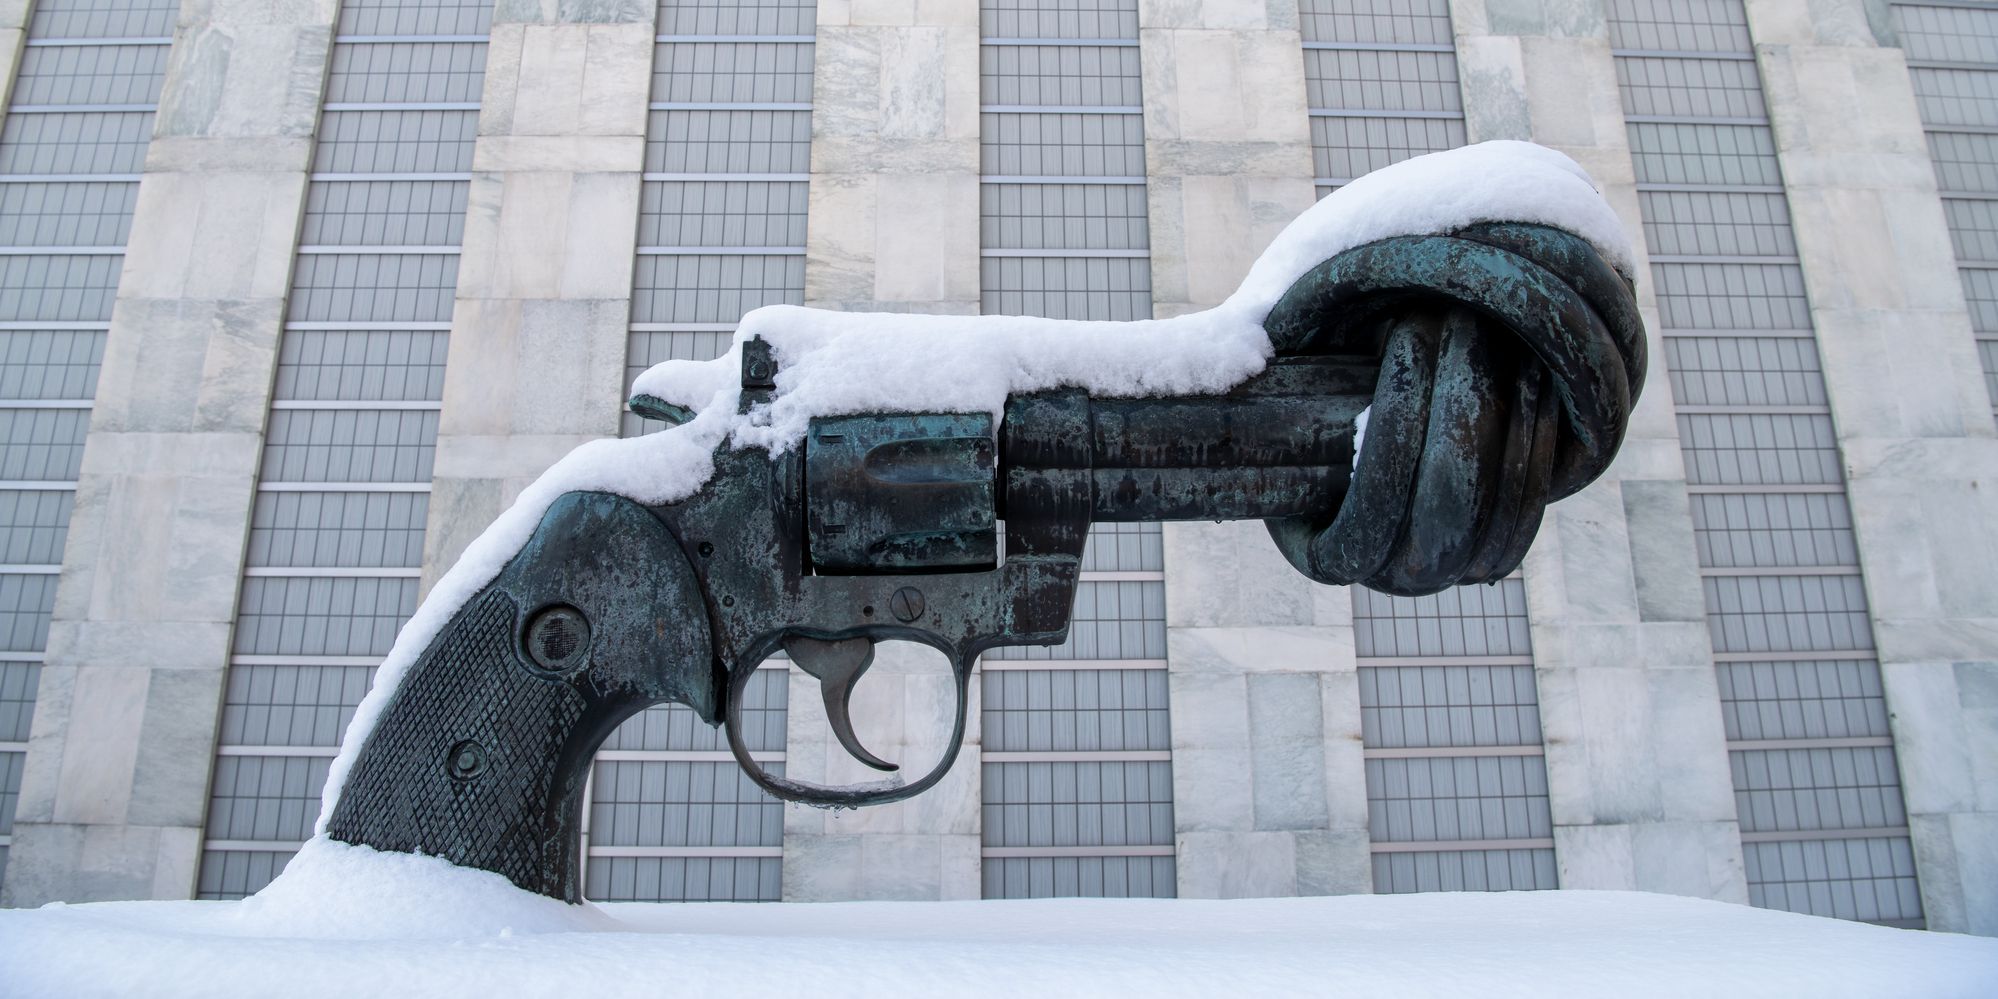 Die Skulptur 'Knotted Gun', eine Pistole deren Lauf verdreht ist, vor dem UN-Sekretariatsgebäude ist von Schnee bedeckt.